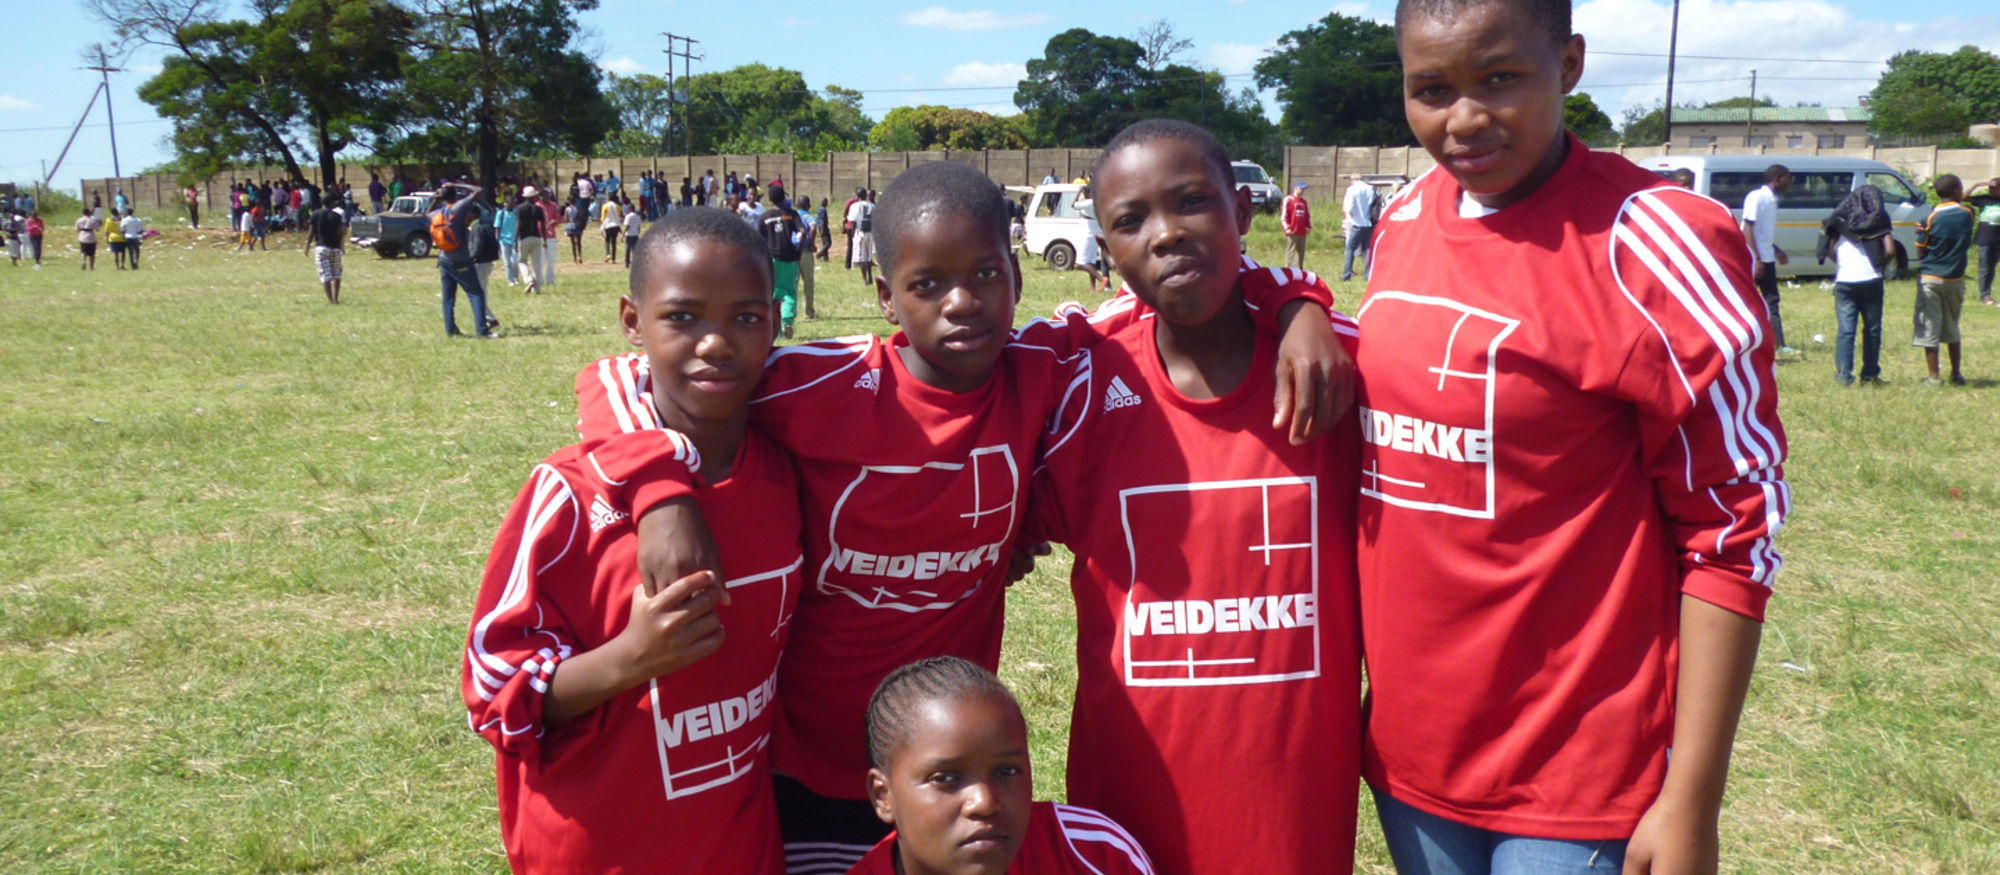 Veidekke bygger fotbollscenter för tjejer i Sydafrika.